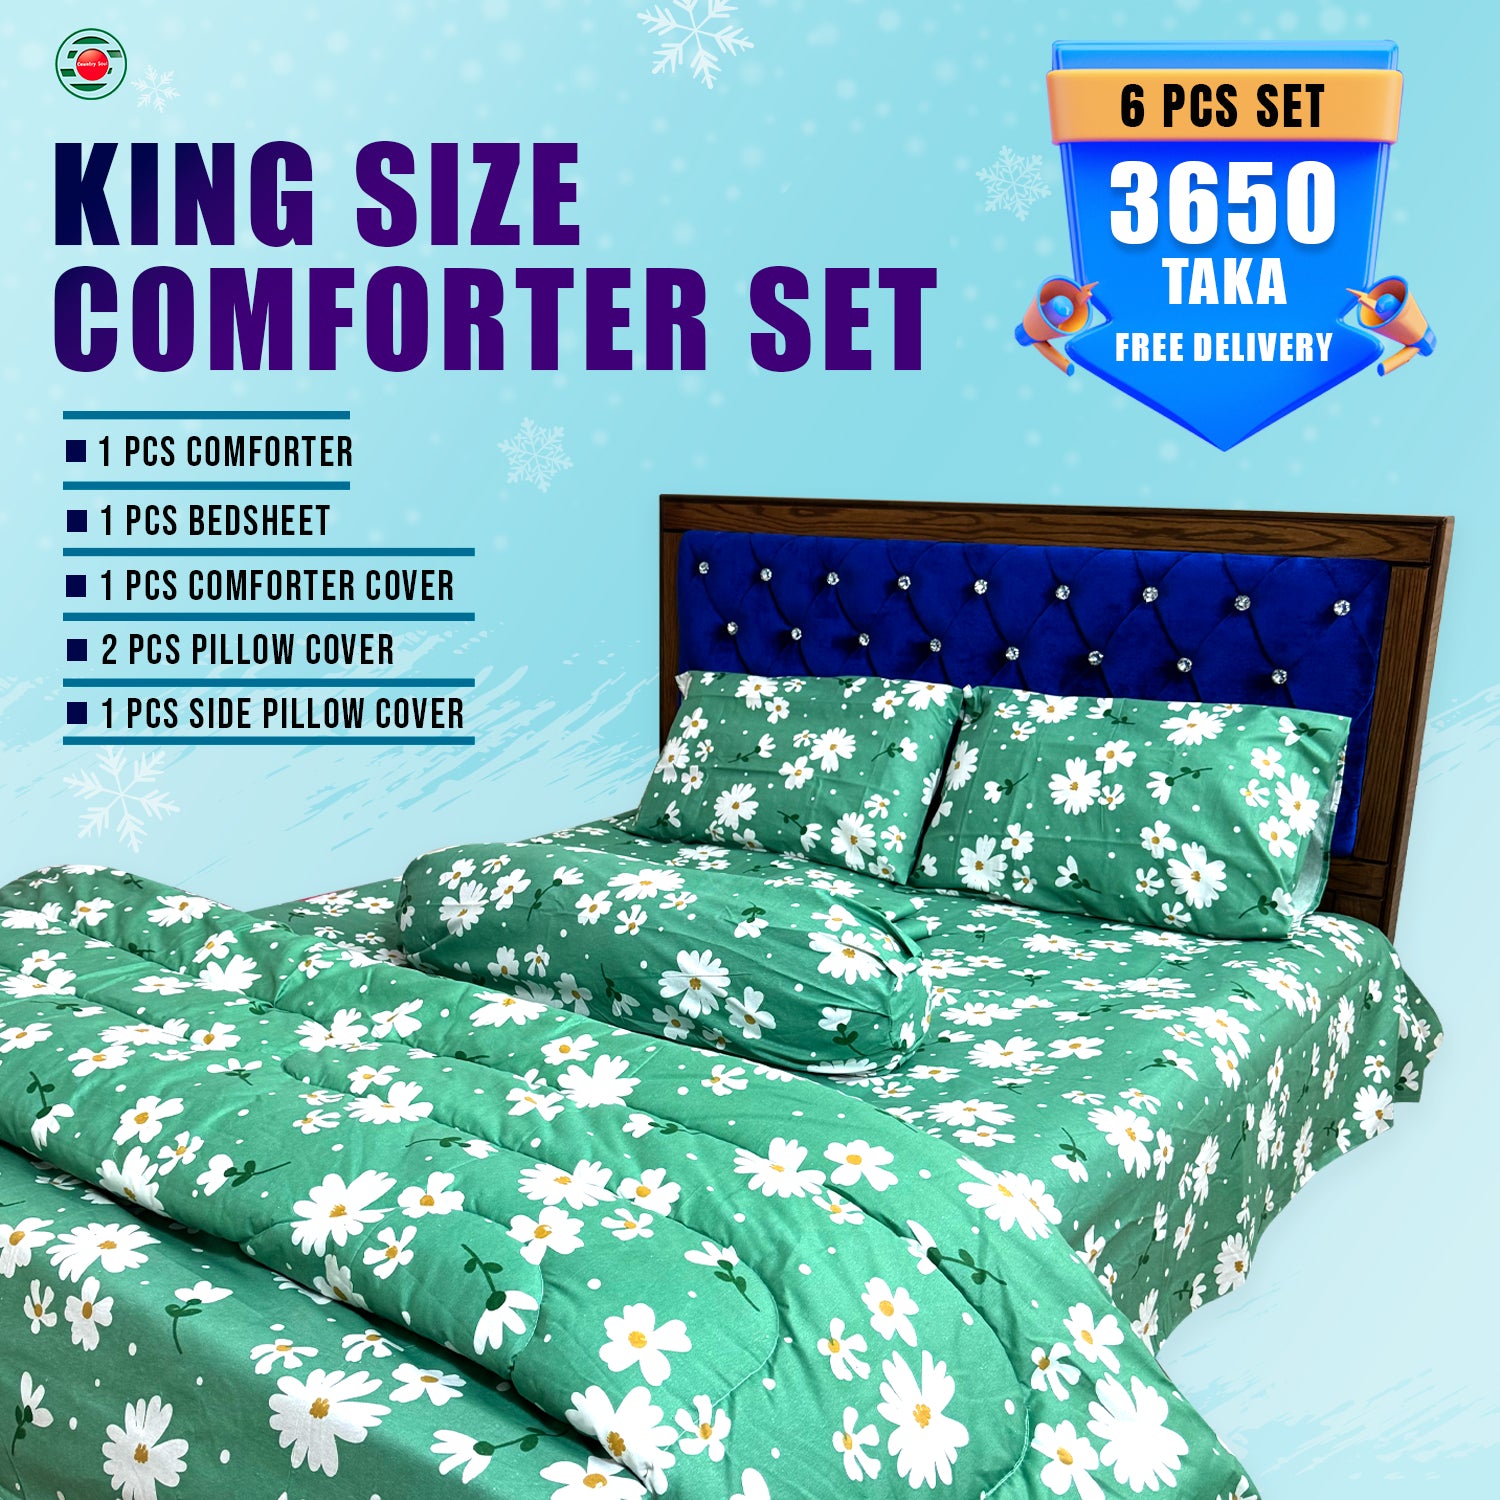 KING SIZE COMFORTER SET (6 PCS SET) 3 Pcs Pillow Cover Free